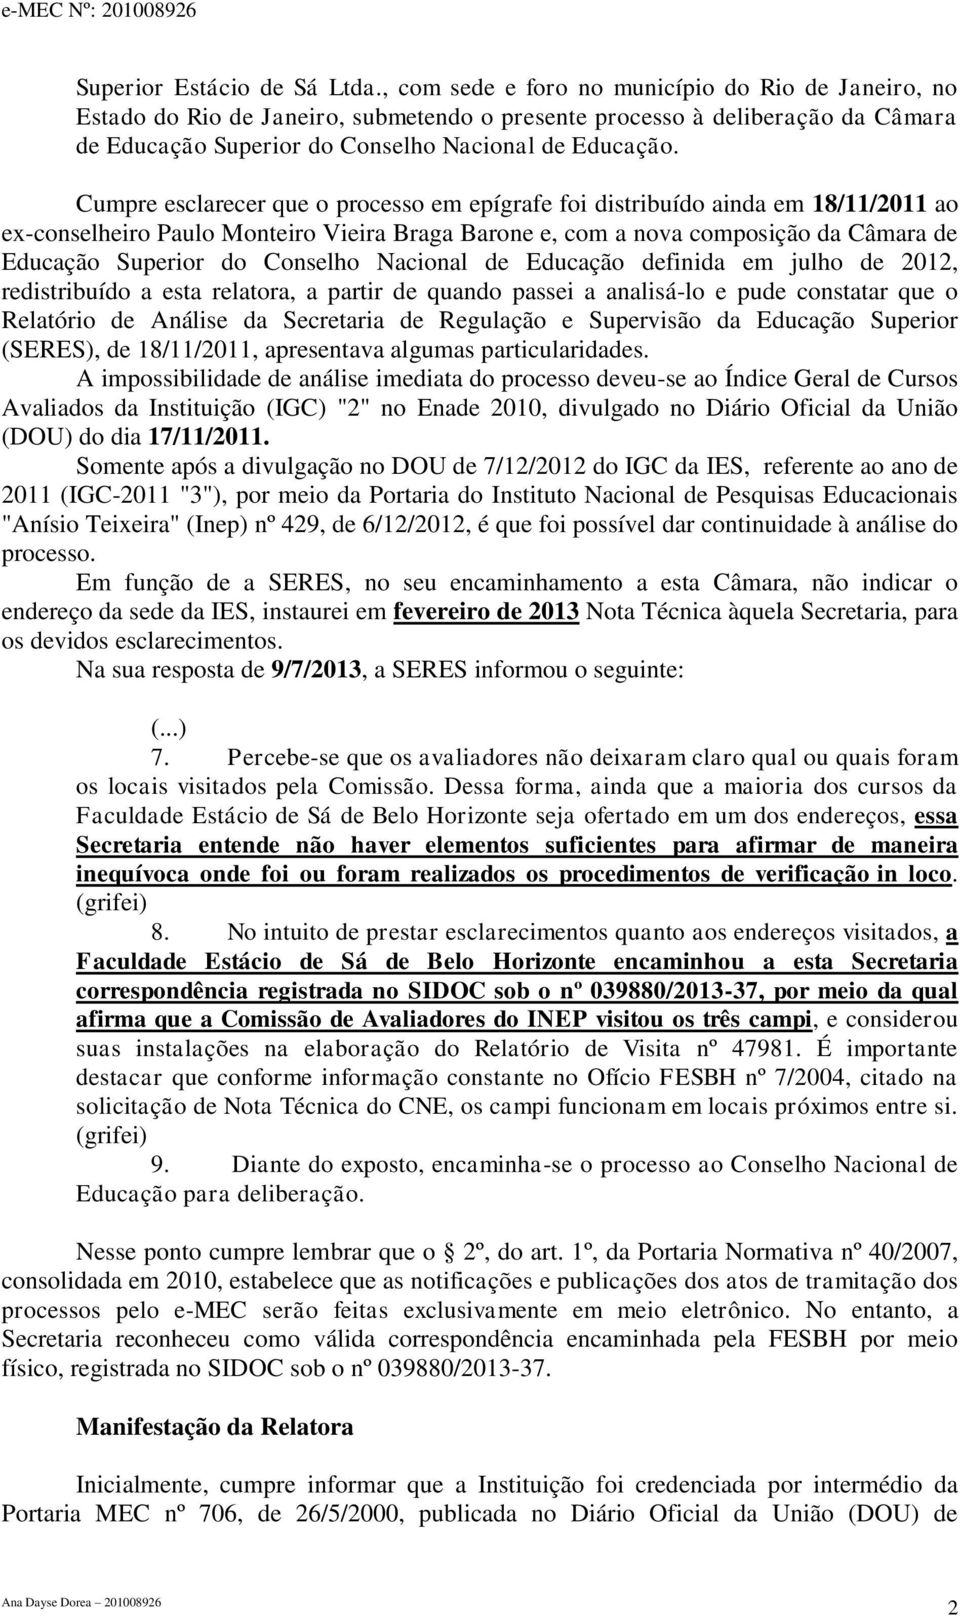 Cumpre esclarecer que o processo em epígrafe foi distribuído ainda em 18/11/2011 ao ex-conselheiro Paulo Monteiro Vieira Braga Barone e, com a nova composição da Câmara de Educação Superior do